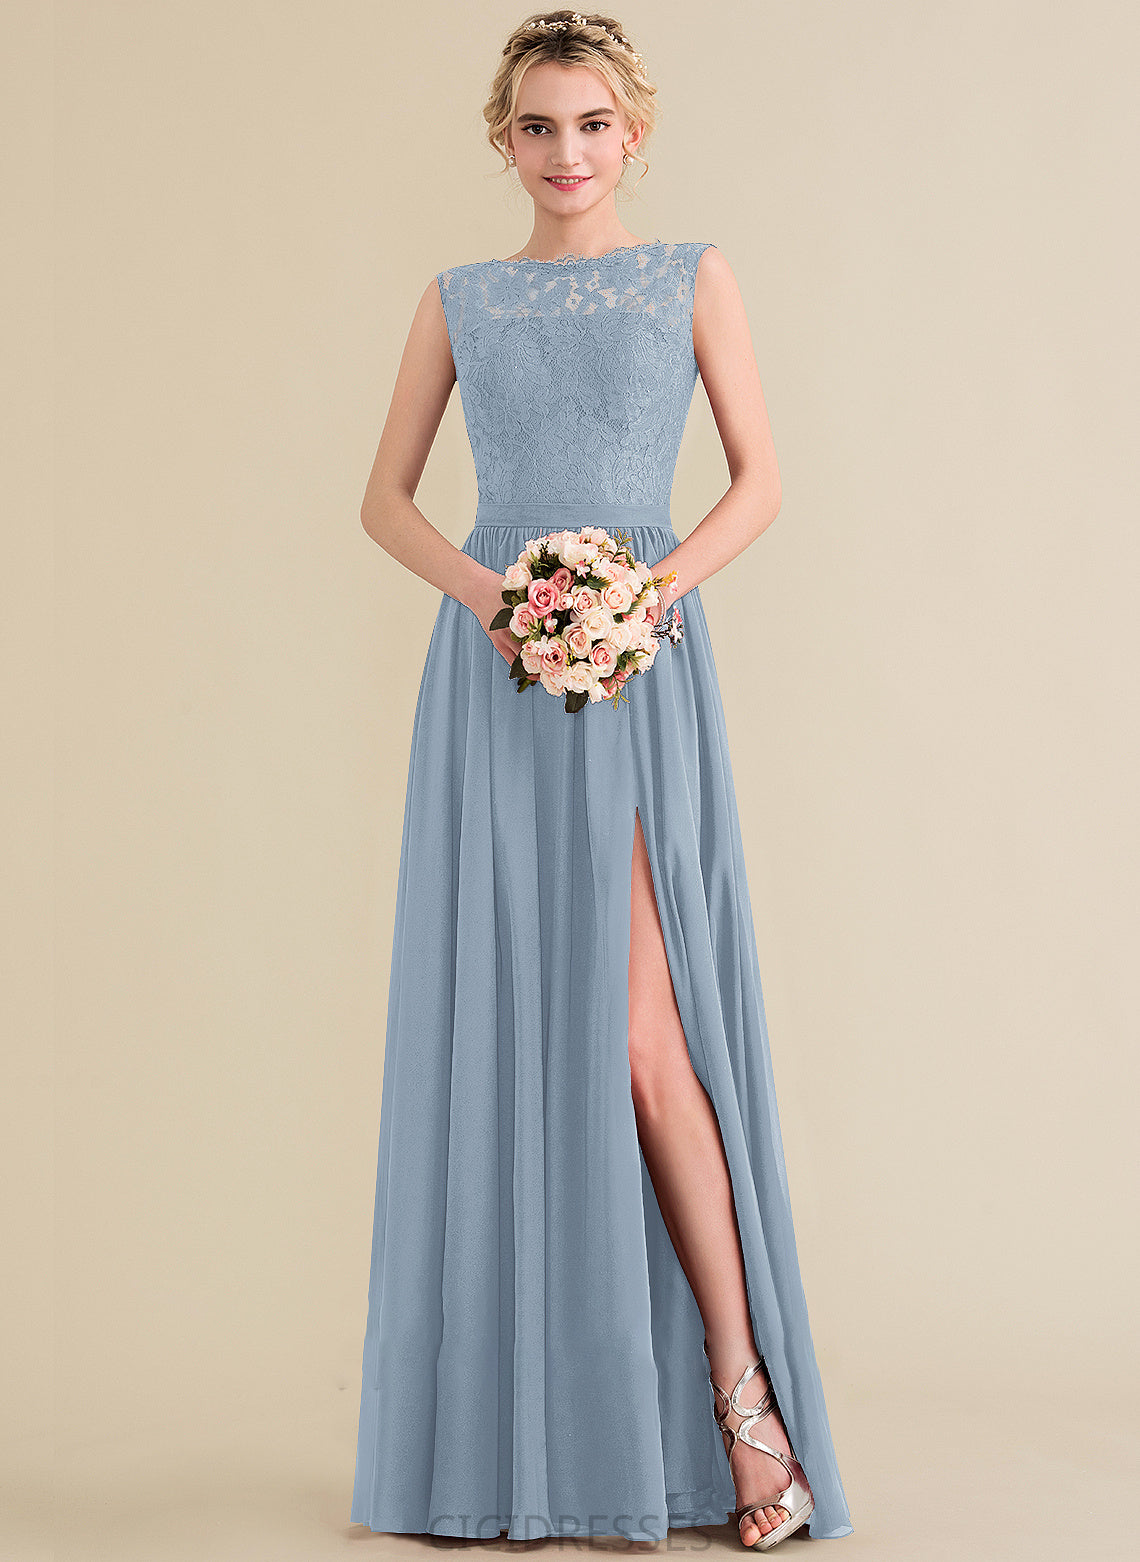 Neckline Fabric ScoopNeck Floor-Length Embellishment SplitFront Length A-Line Silhouette Moriah Natural Waist V-Neck Bridesmaid Dresses